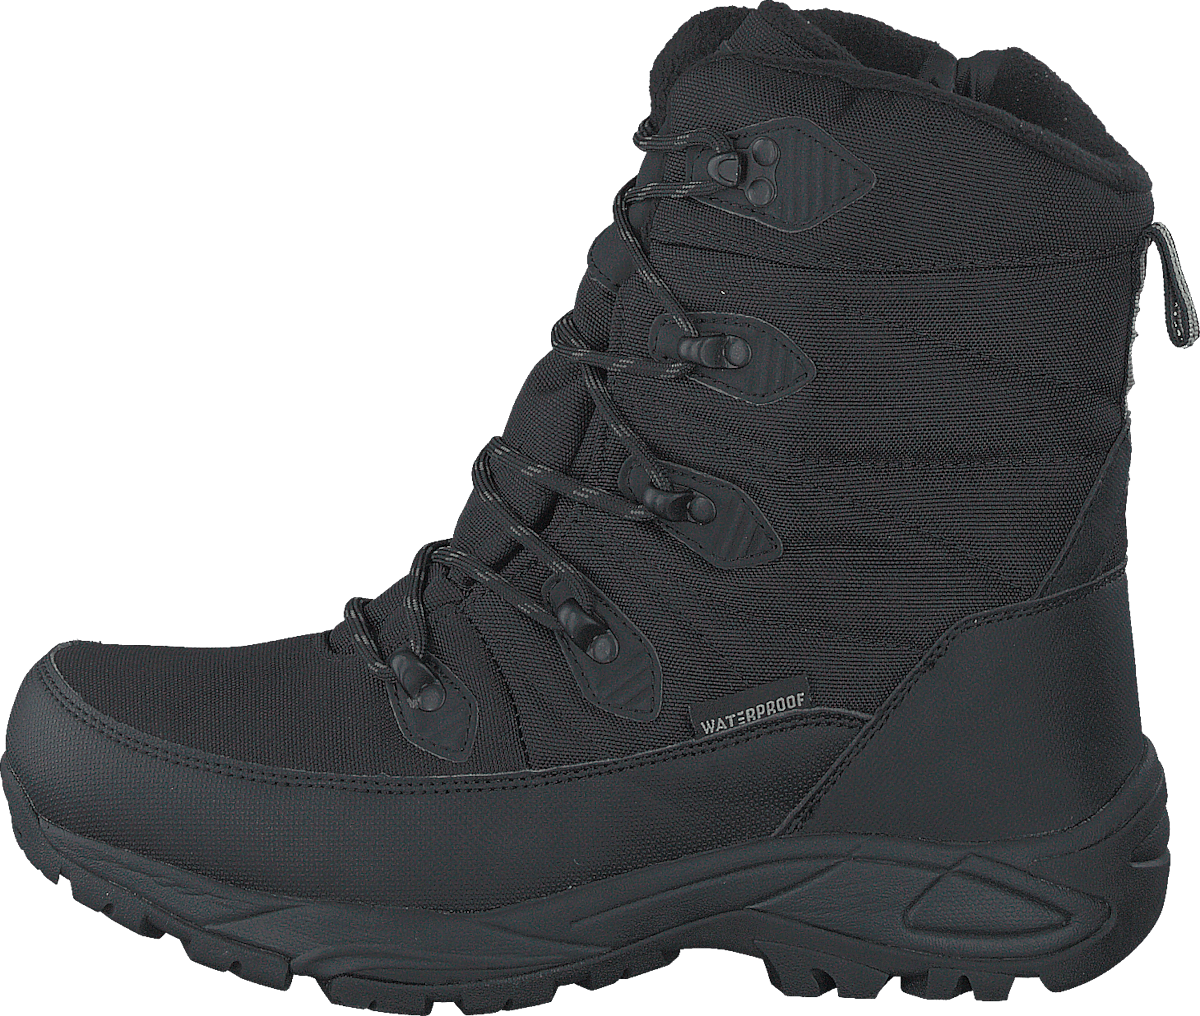 430-9925 Waterproof Warm Lined Black